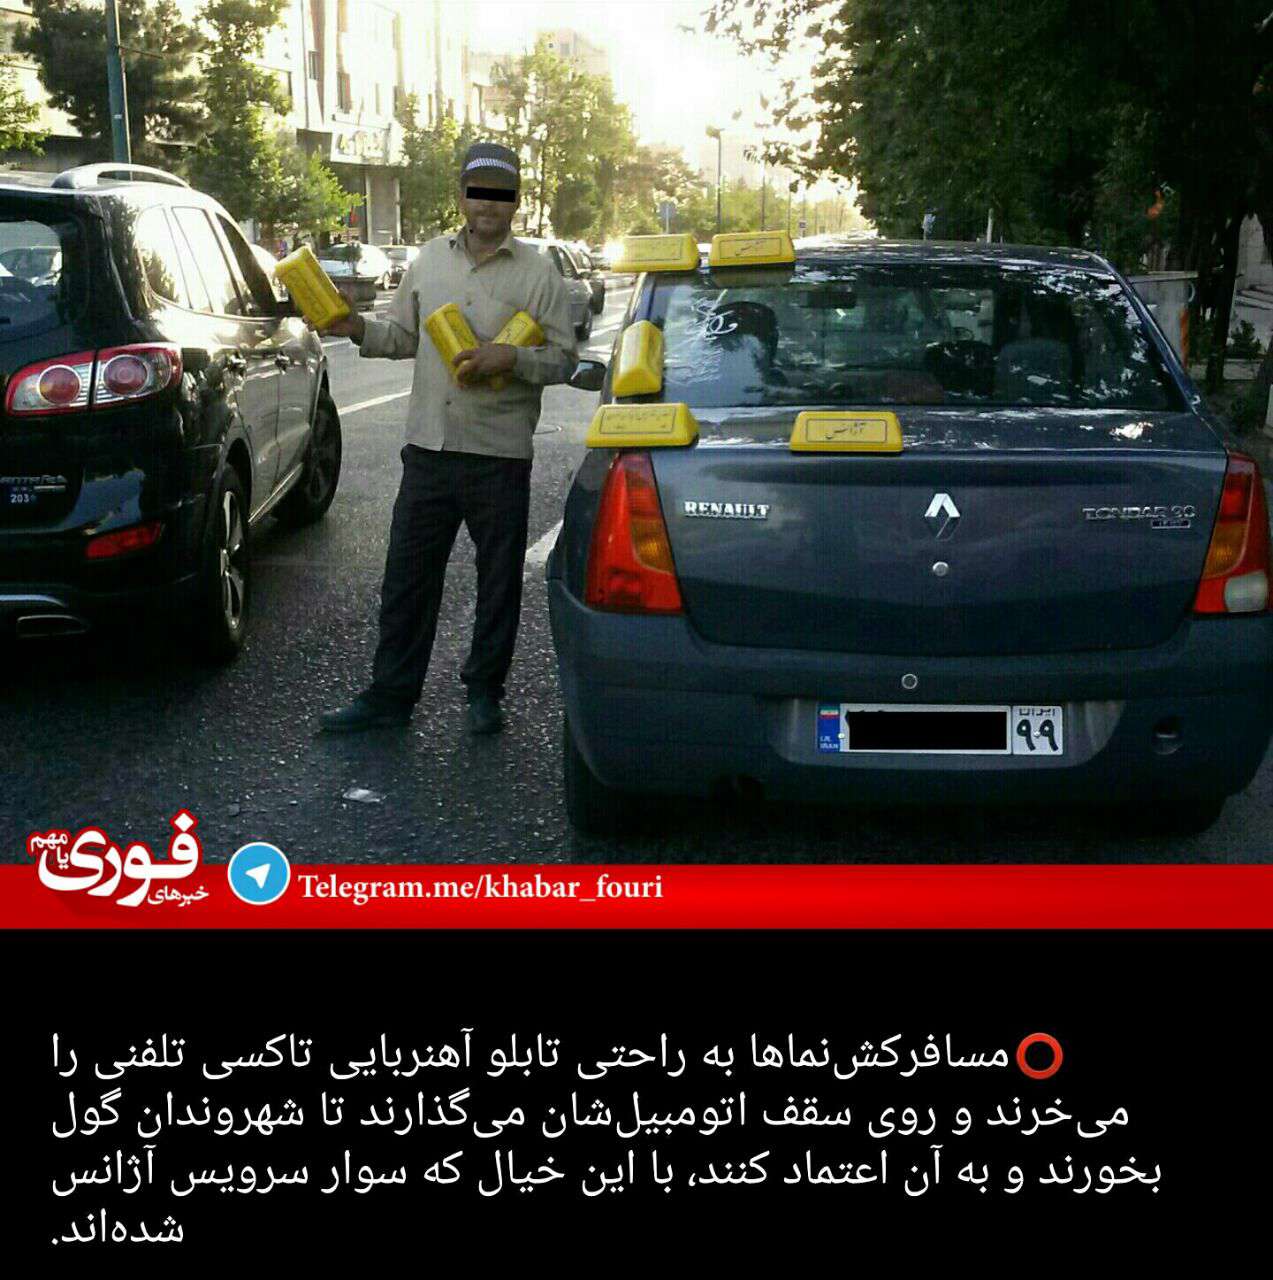 فروش تابلوهای زرد مخصوص "تاکسی تلفنی" در تهران، جهت جعل این عنوان و جلب اعتماد مسافران!